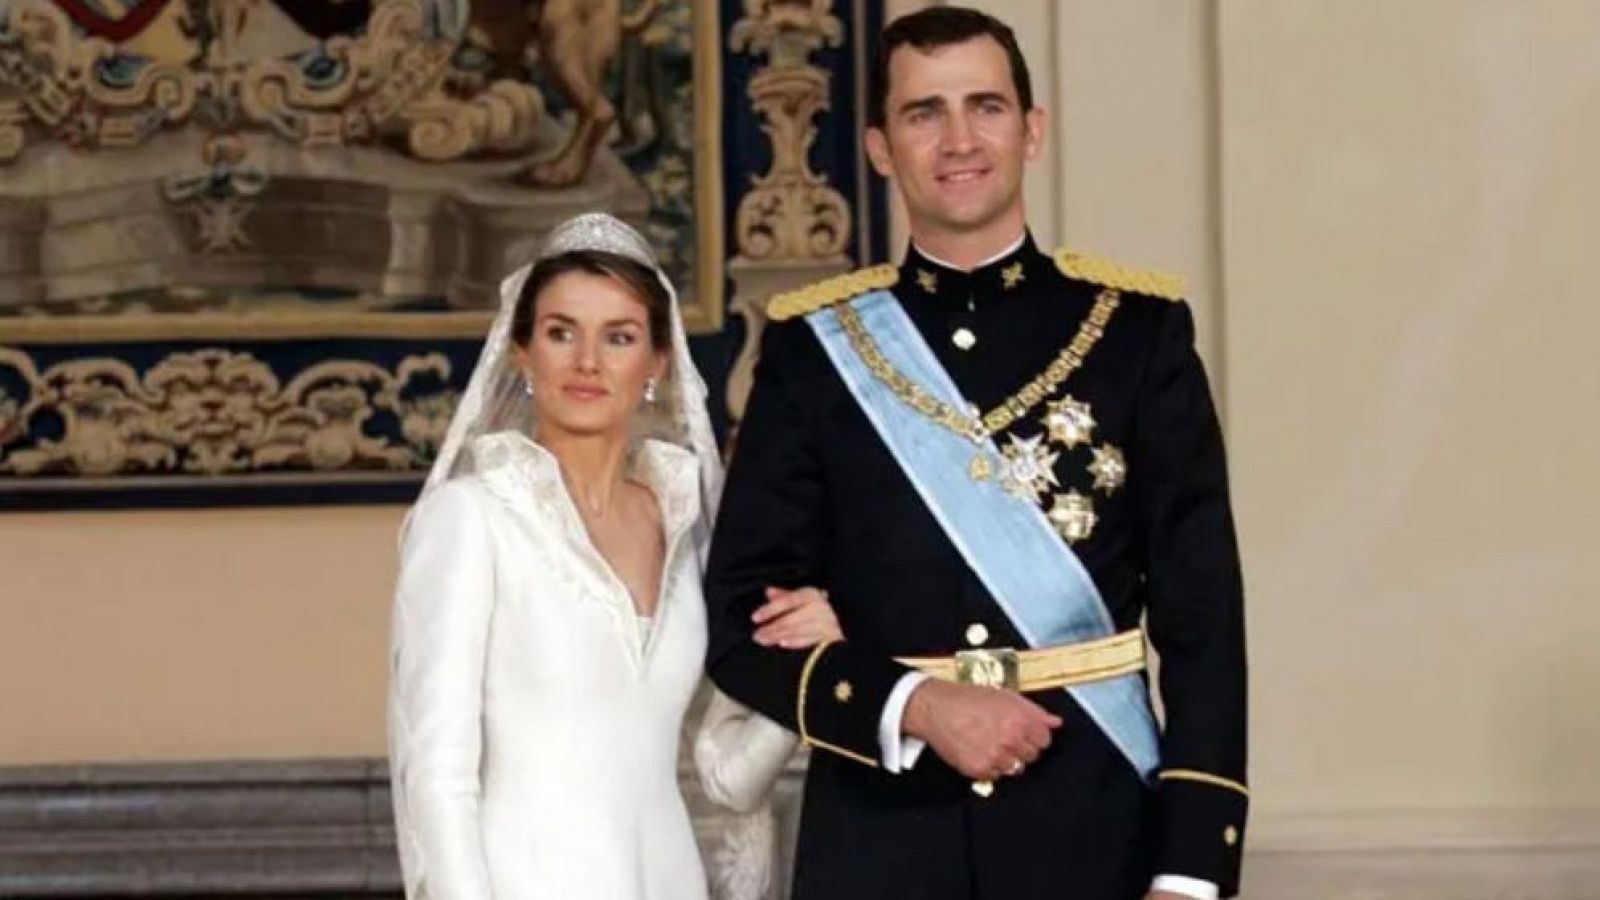 La boda de los príncipes de Asturias Felipe y Letizia (2004)